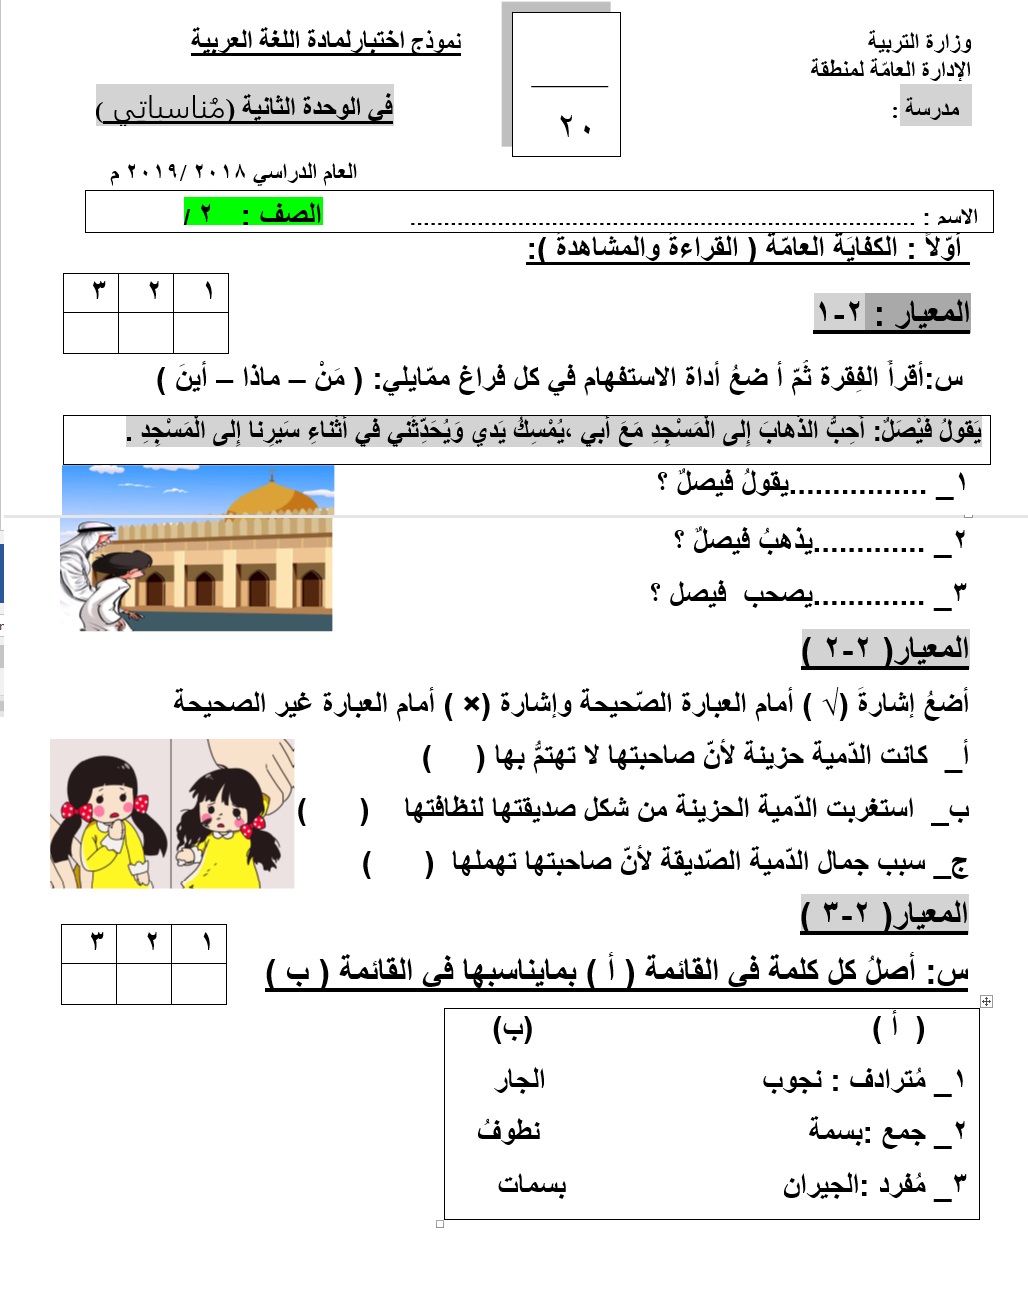 نموذج اختبار للوحدة الثانية لغة عربية للصف الثاني الفصل الثاني 2018